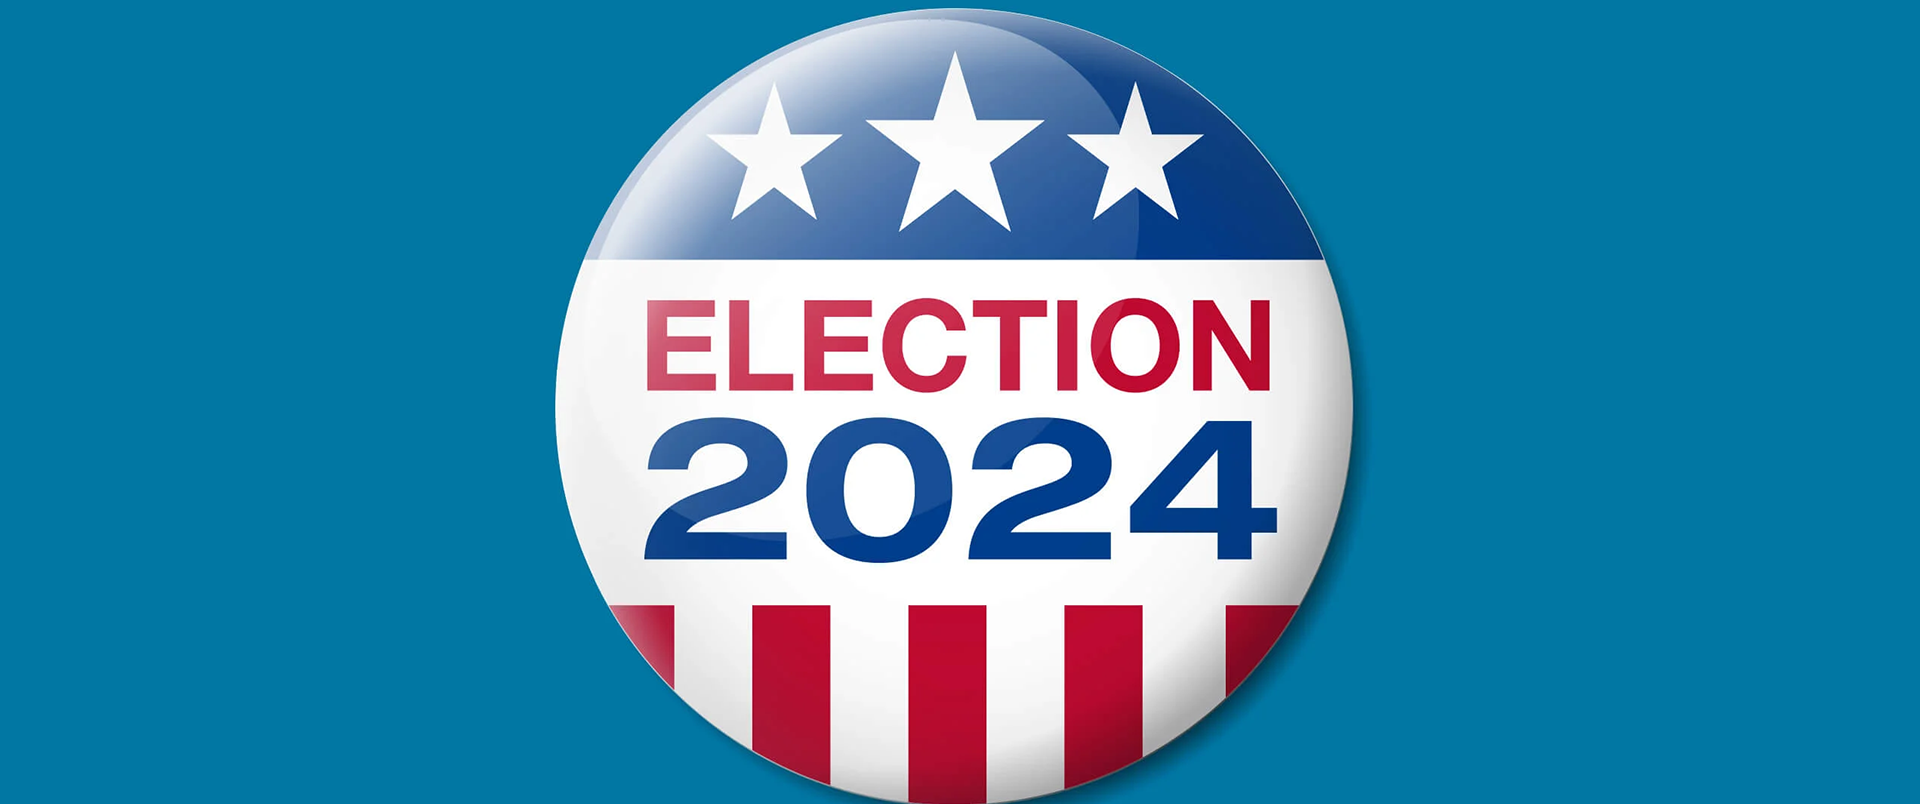 Election 2024 Button for Calendar